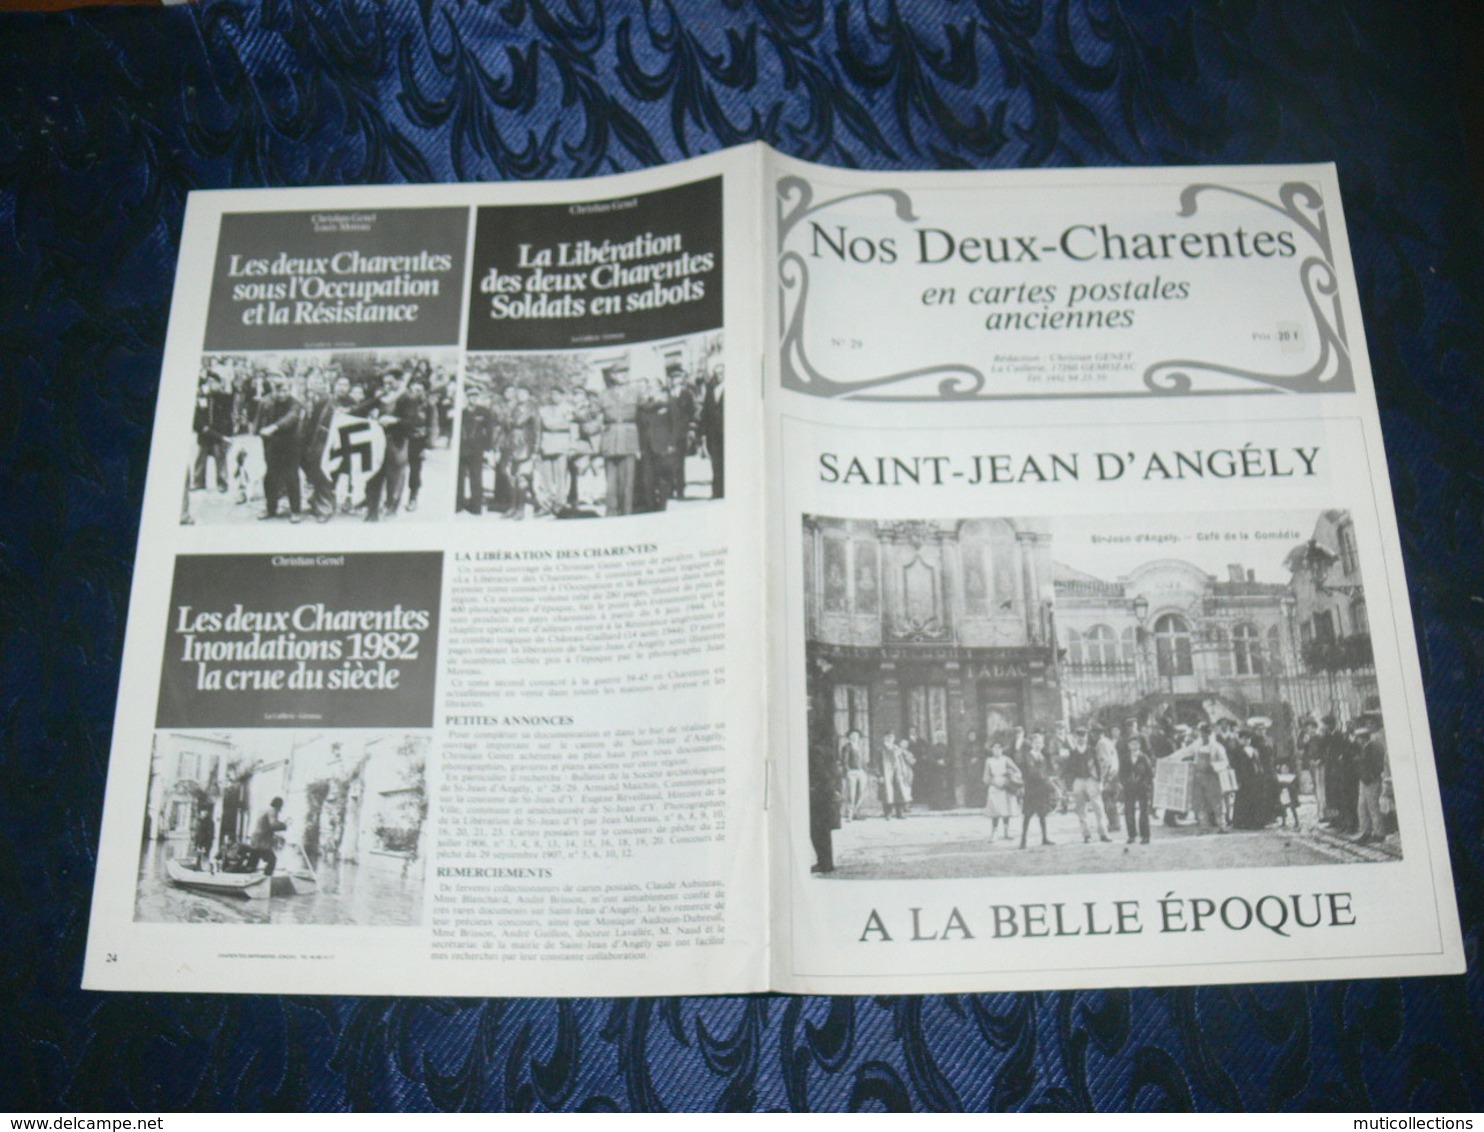 NOS DEUX CHARENTES EN CPA N° 29 /  SAINT JEAN D ANGELY 1900 / SAINTES / ROCHEFORT / ROYAN / OLERON / SAUJON - Poitou-Charentes